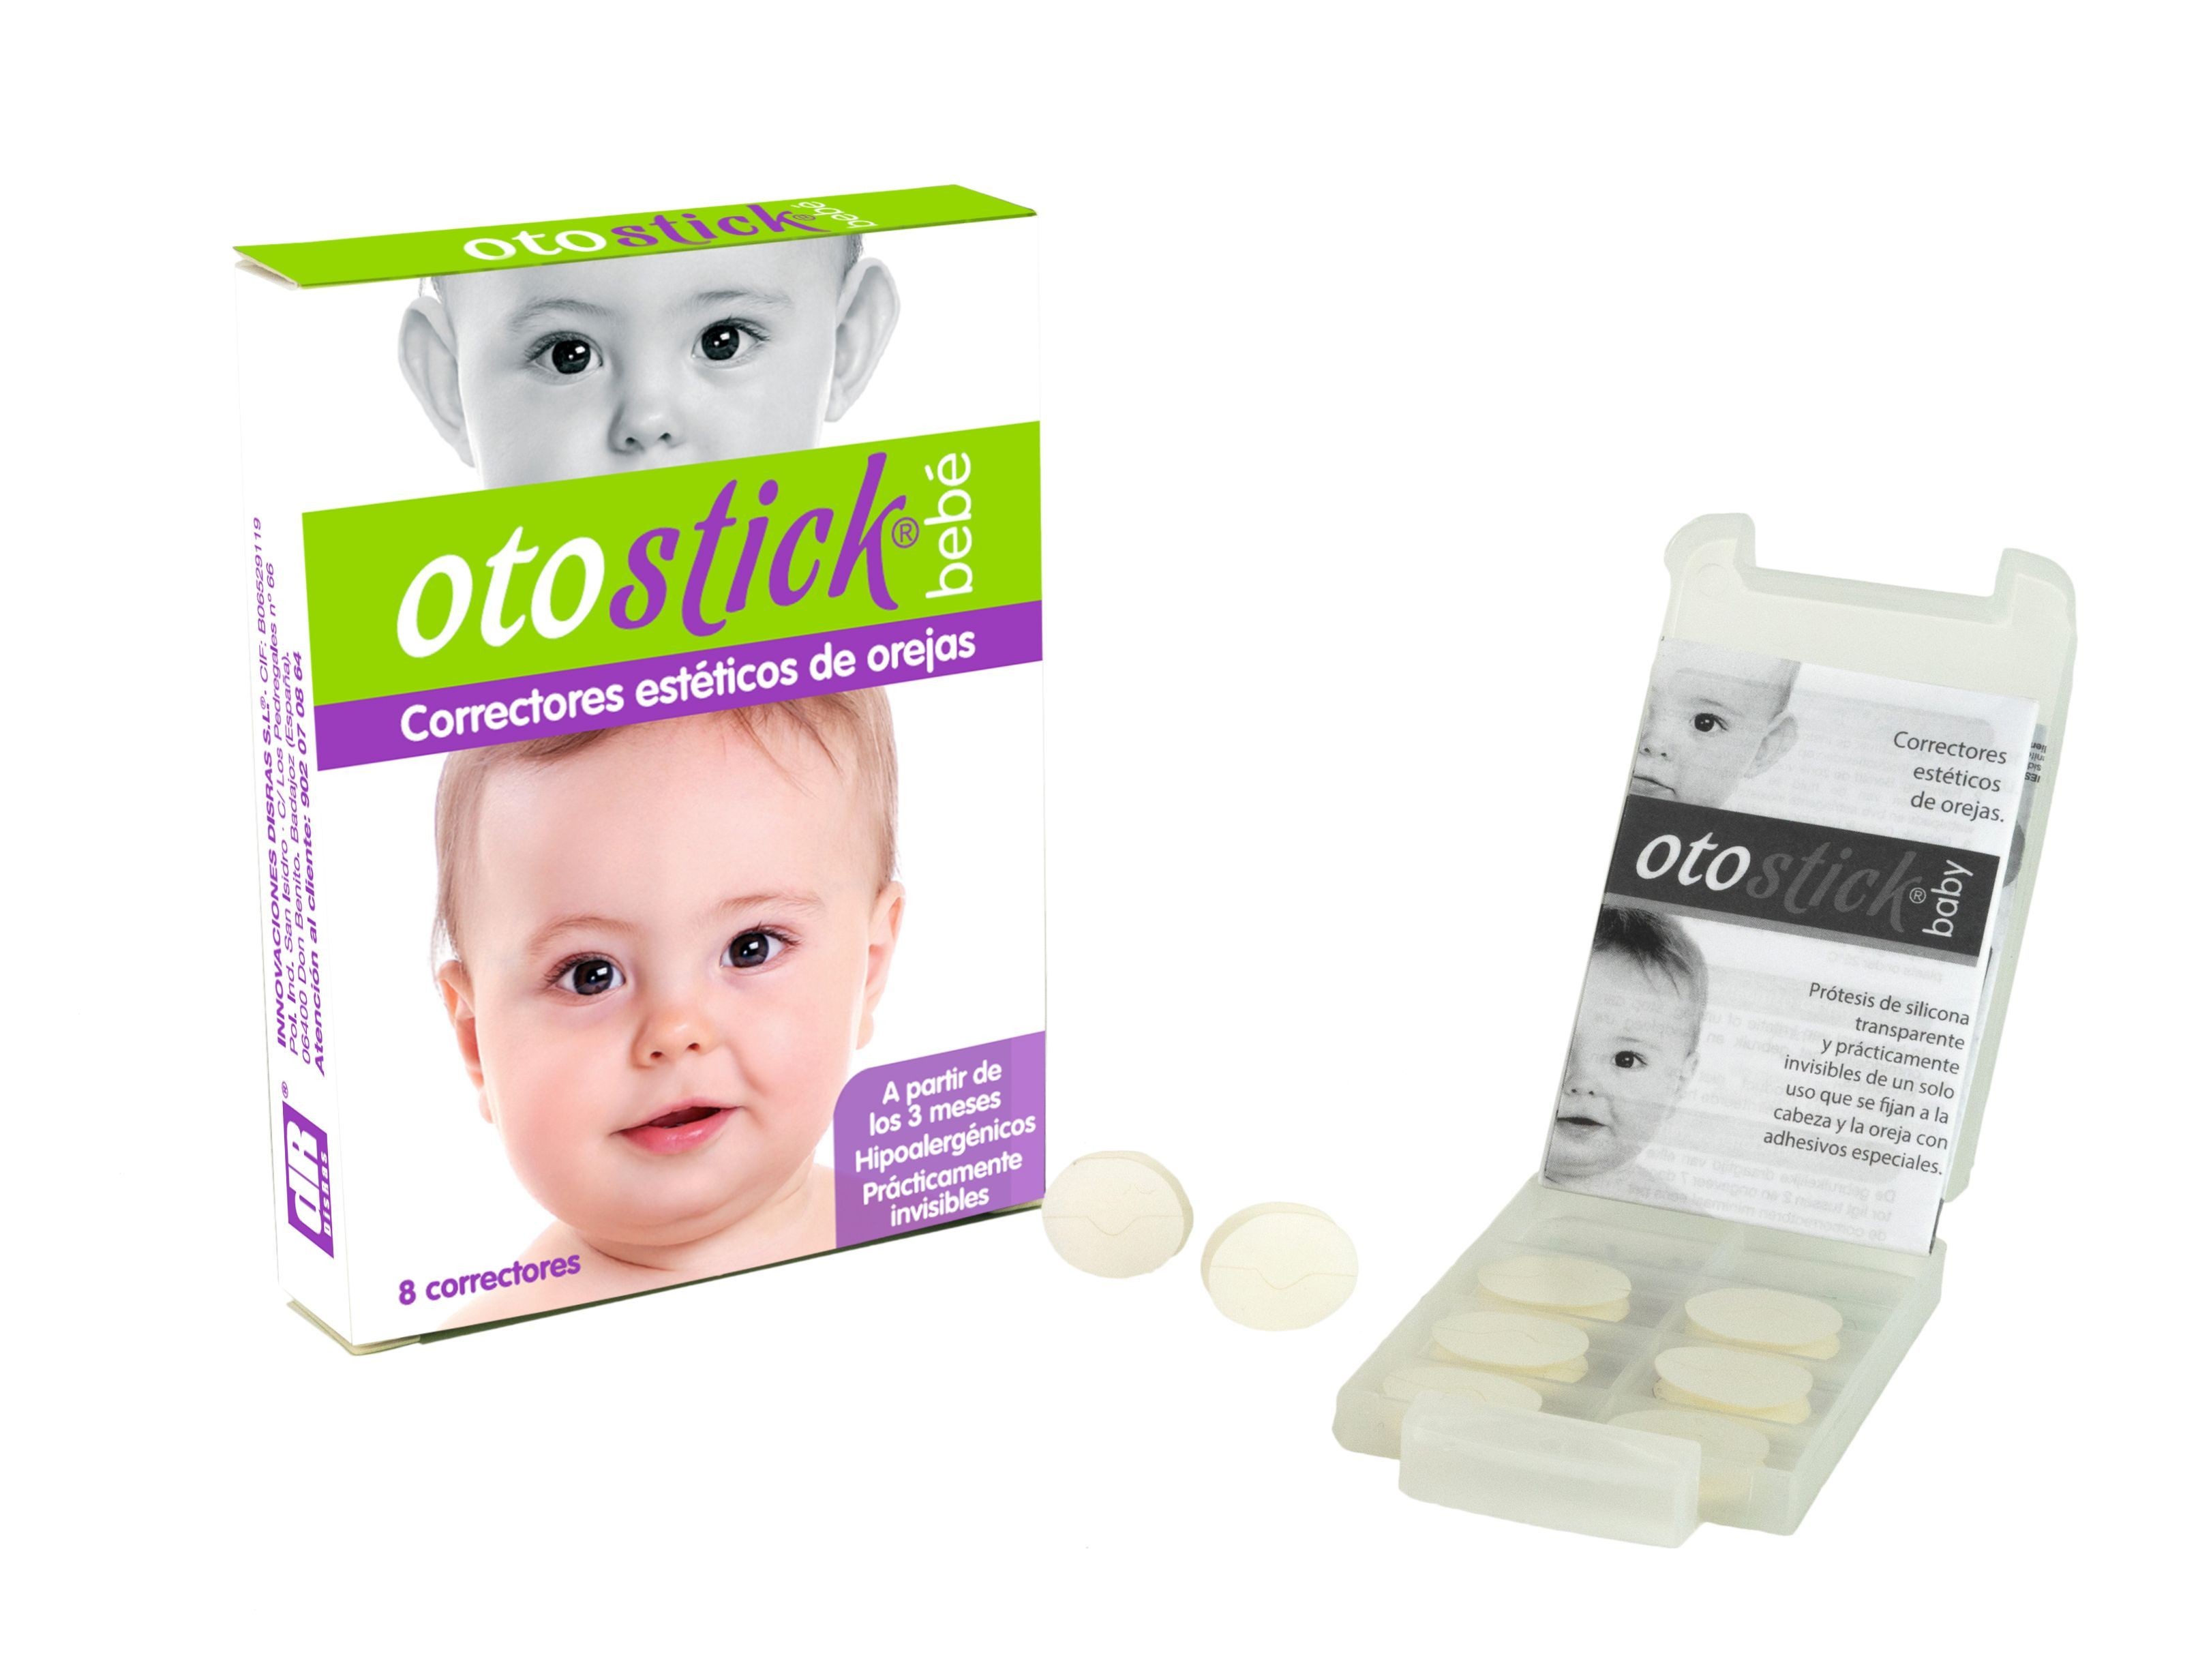 Otostick® Bebé 1 unidad - Otostick Colombia: corrector estético de orejas